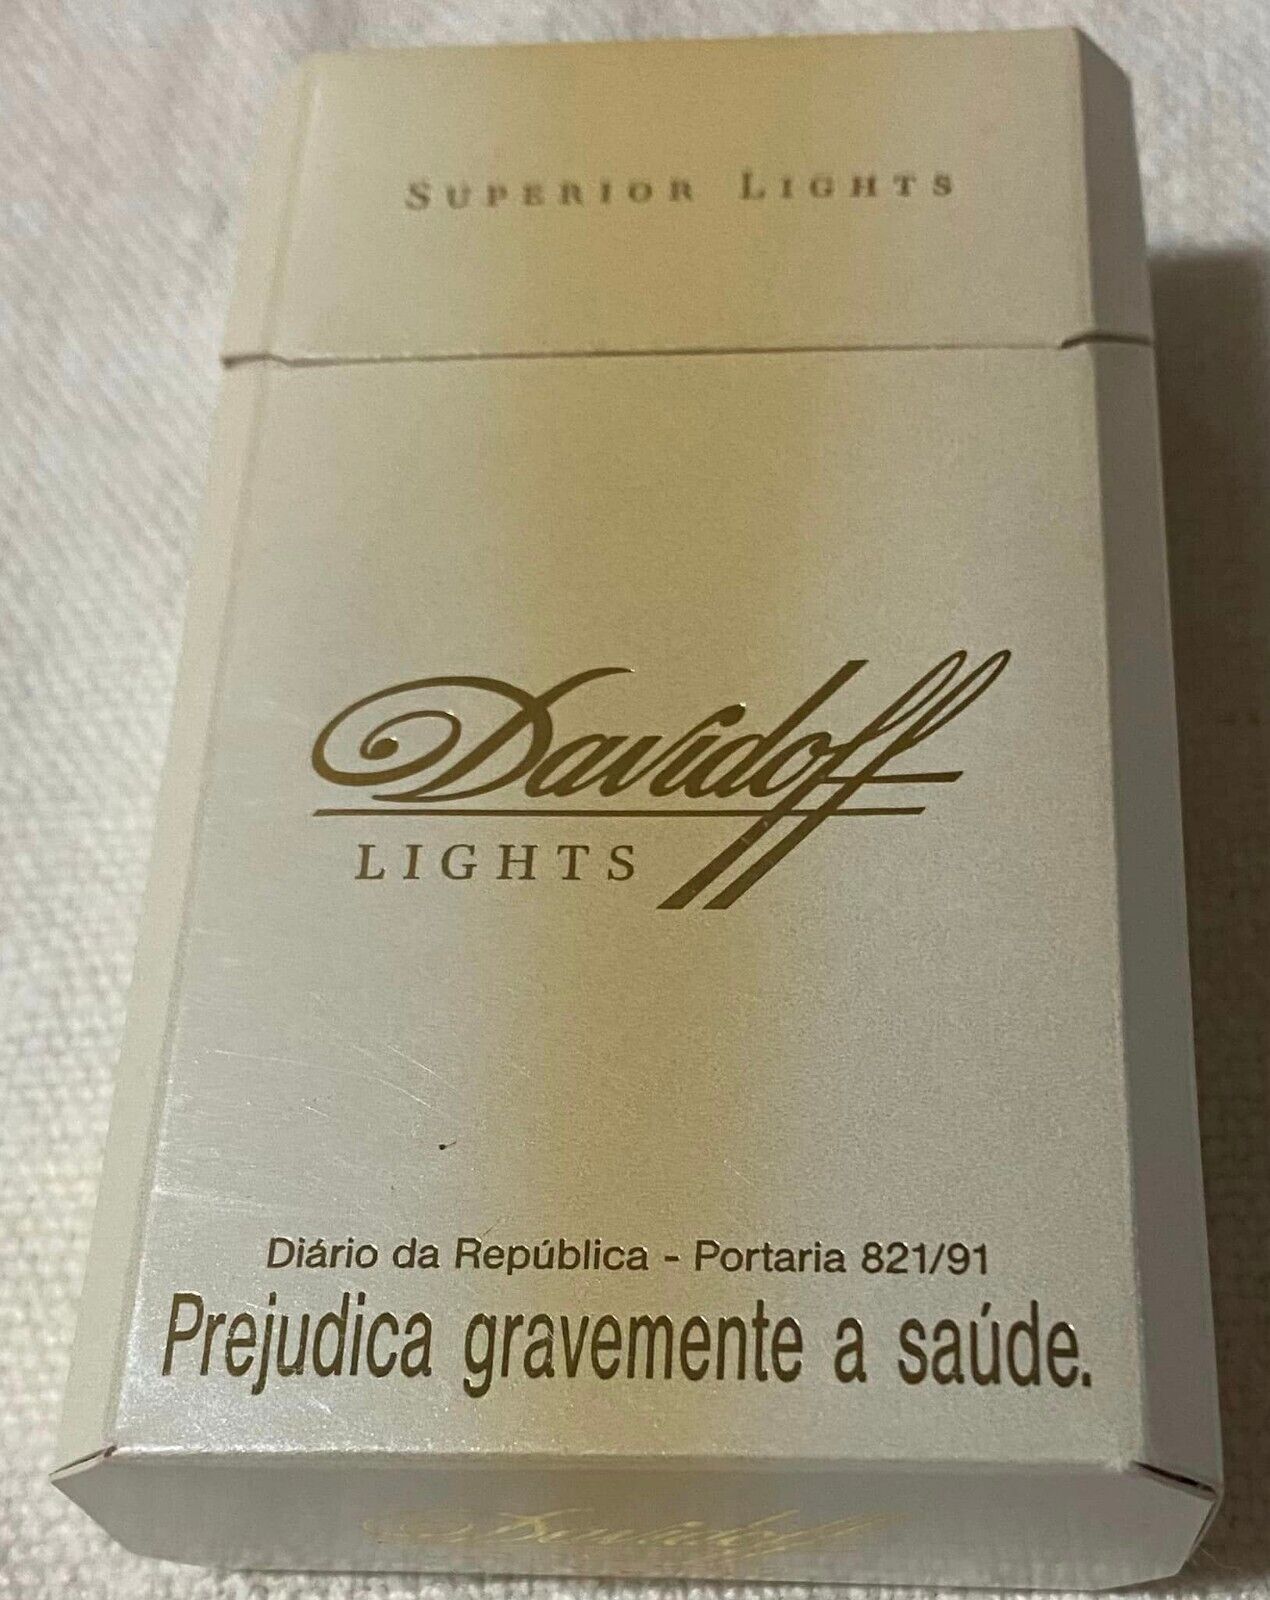 Vintage Davidoff Lights Cigarette Cigarettes Cigarette Paper Box Empty Cigarette